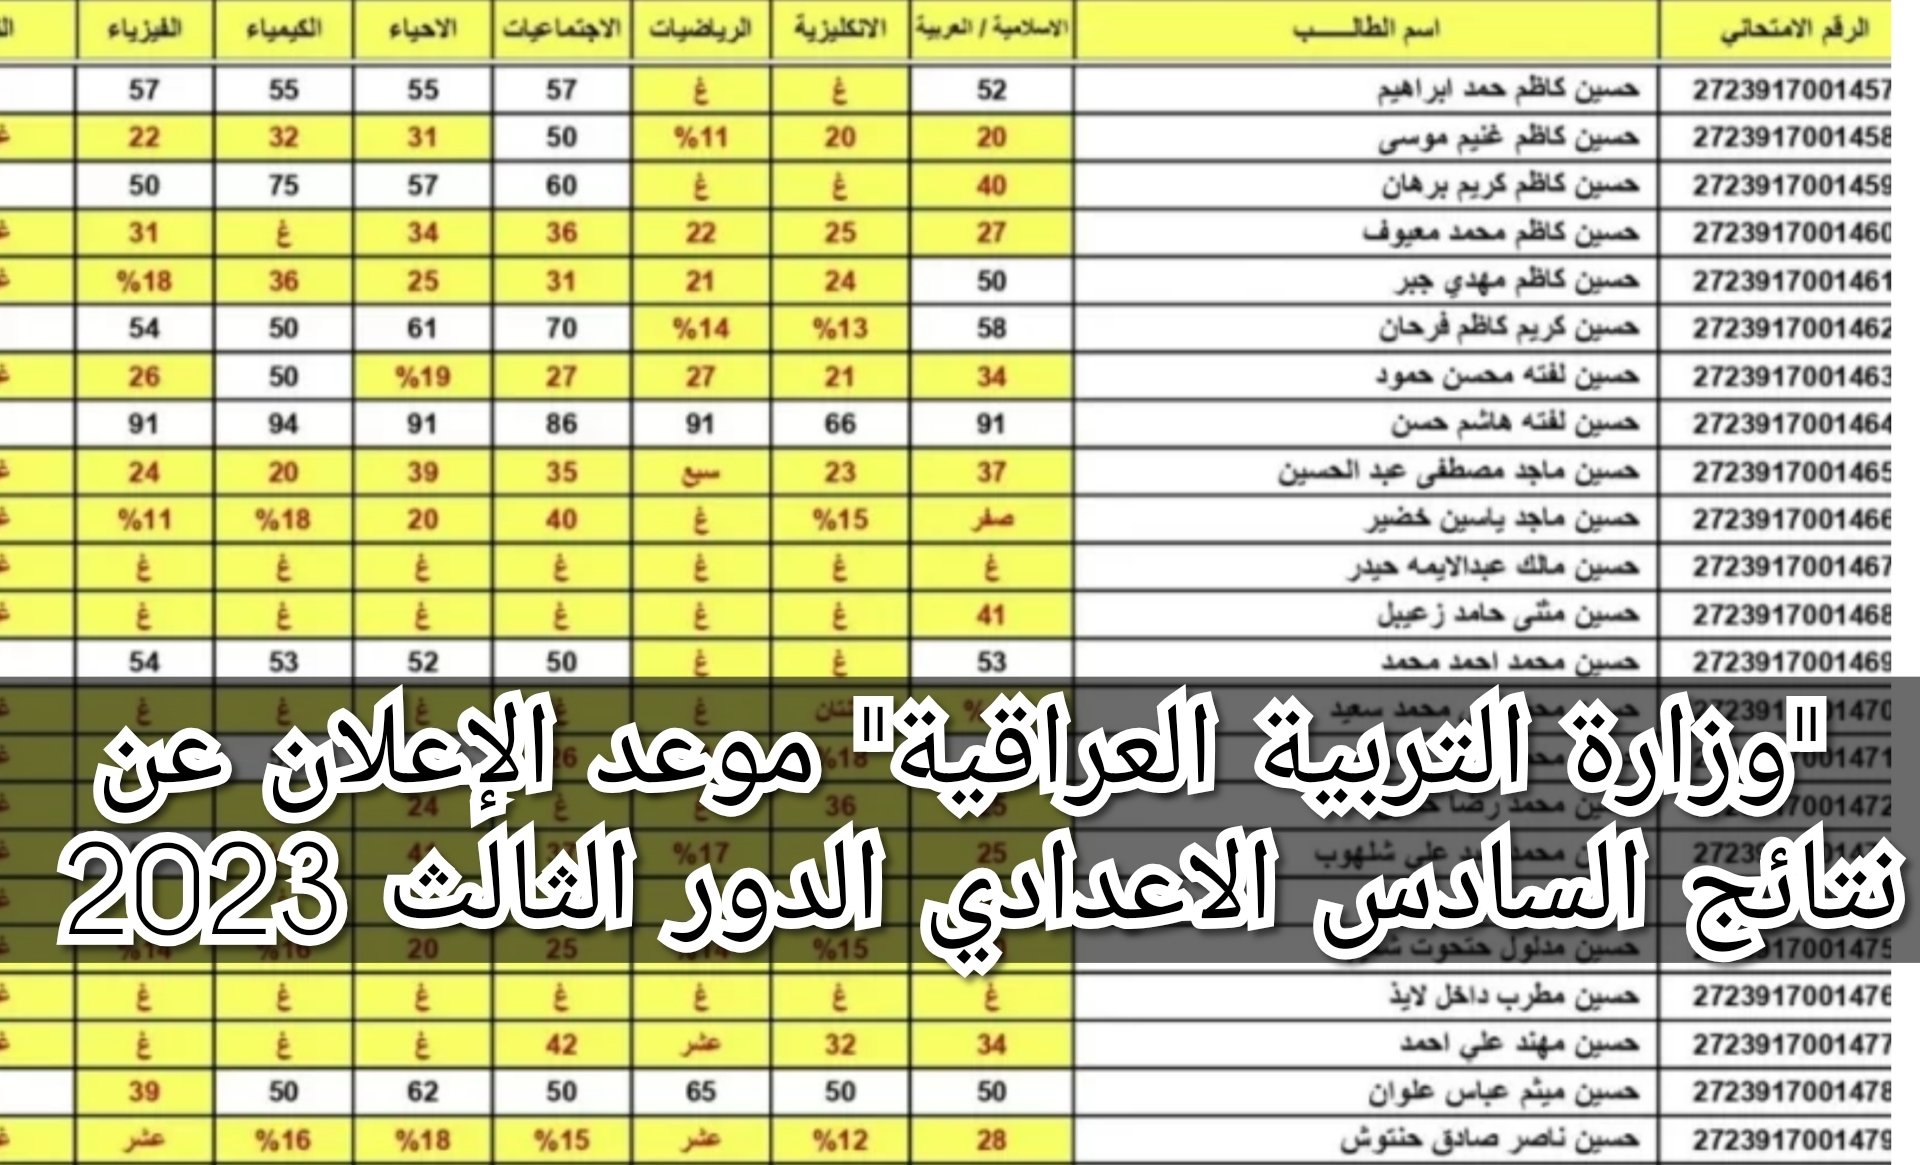 "وزارة التربية العراقية" موعد الإعلان عن نتائج السادس الاعدادي الدور الثالث 2023 